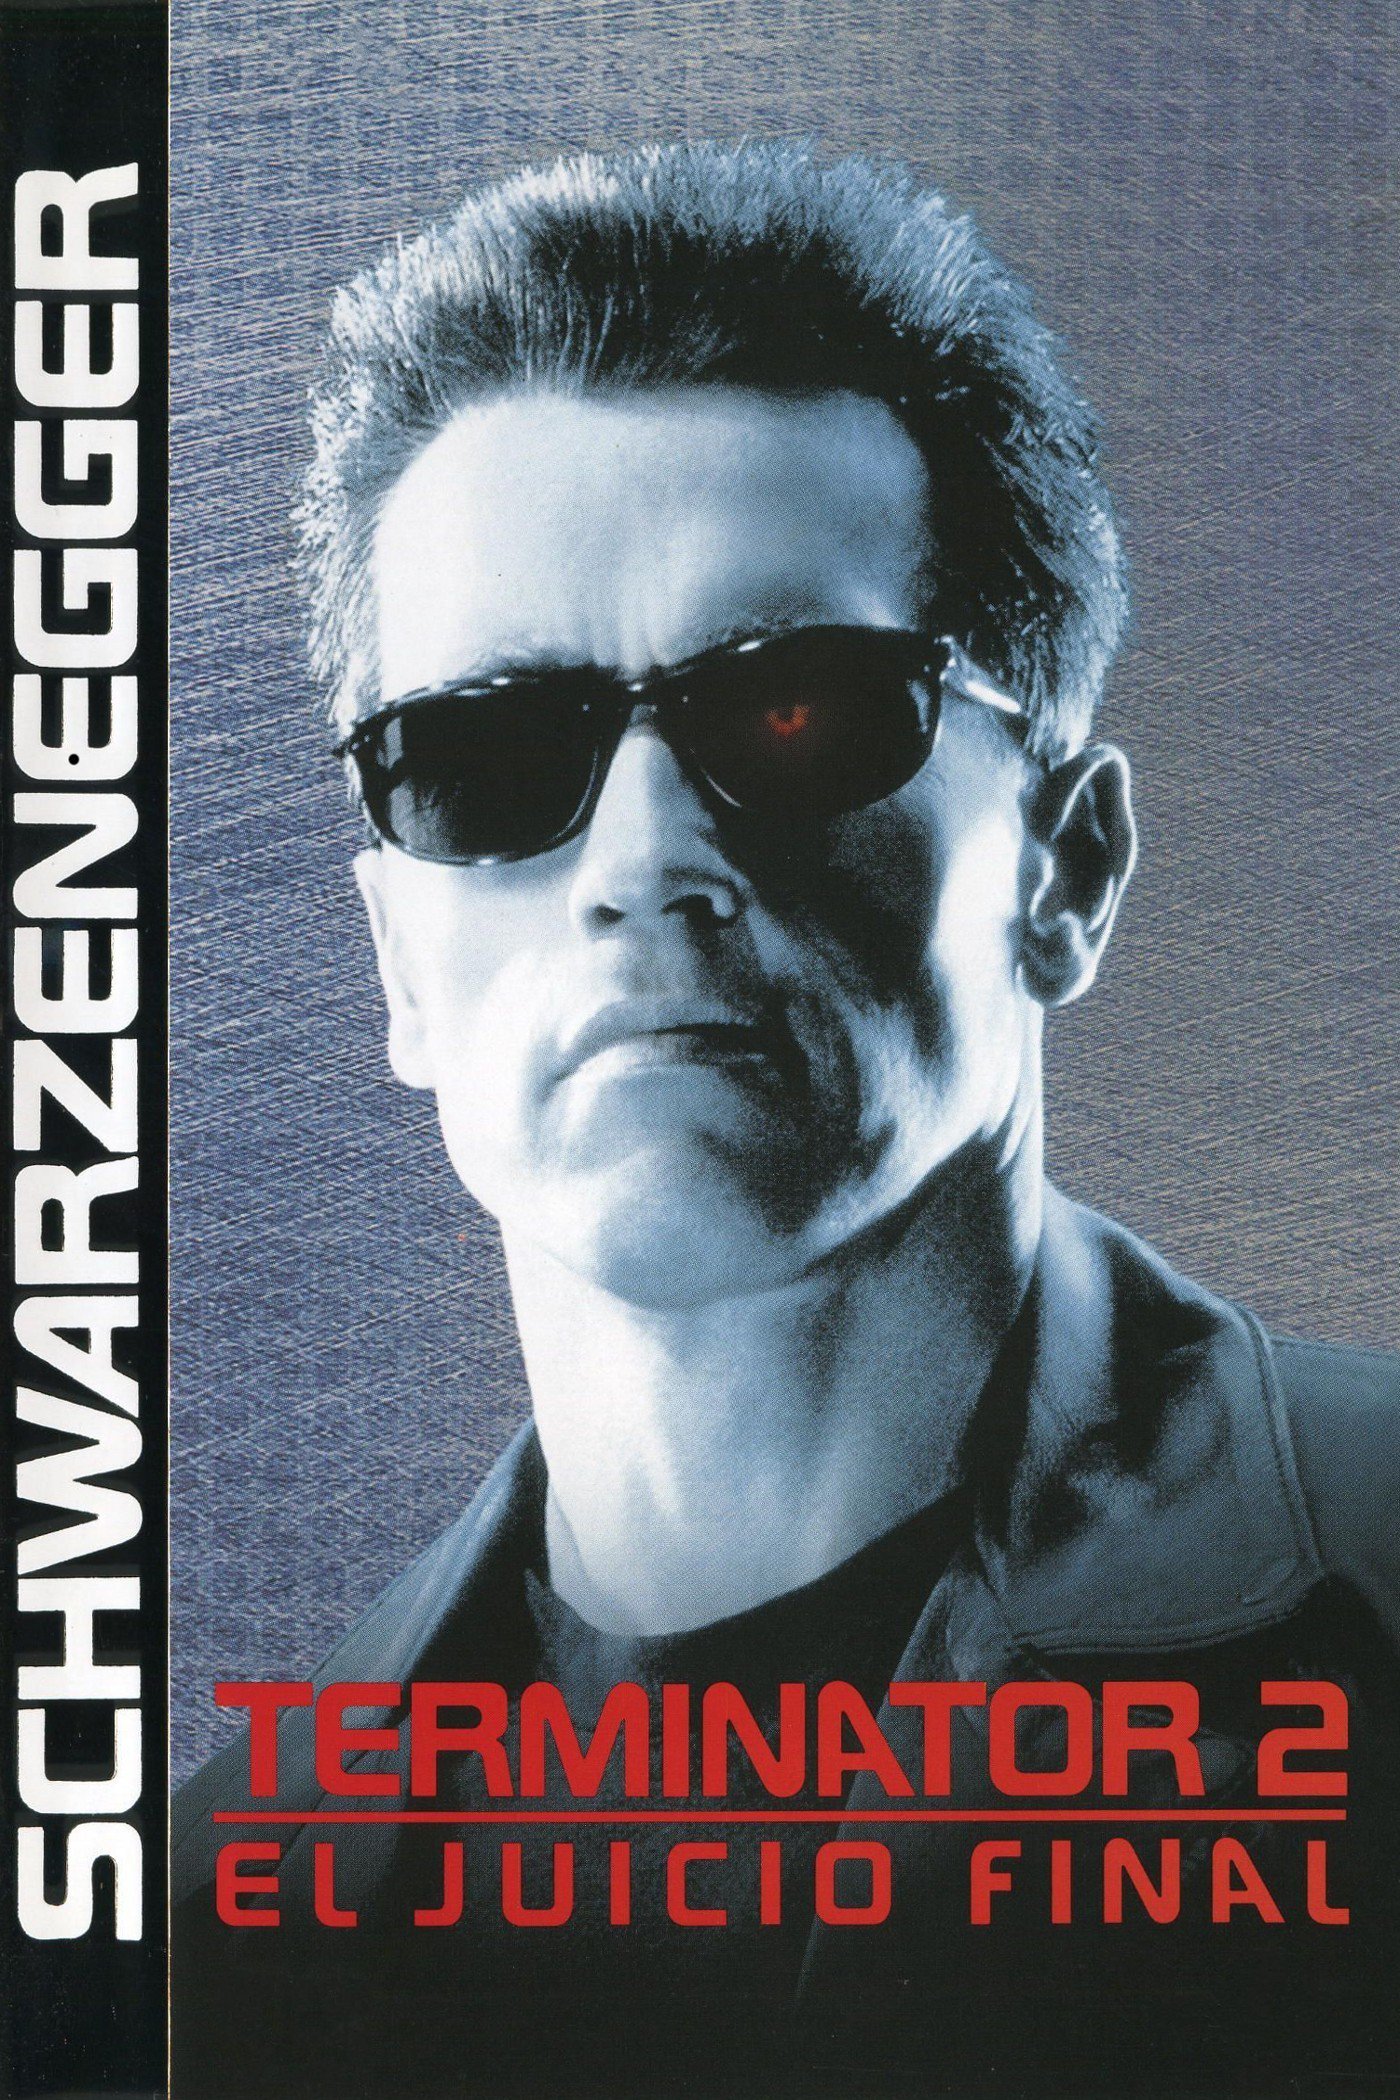 Poster de la película "Terminator 2: El juicio final"